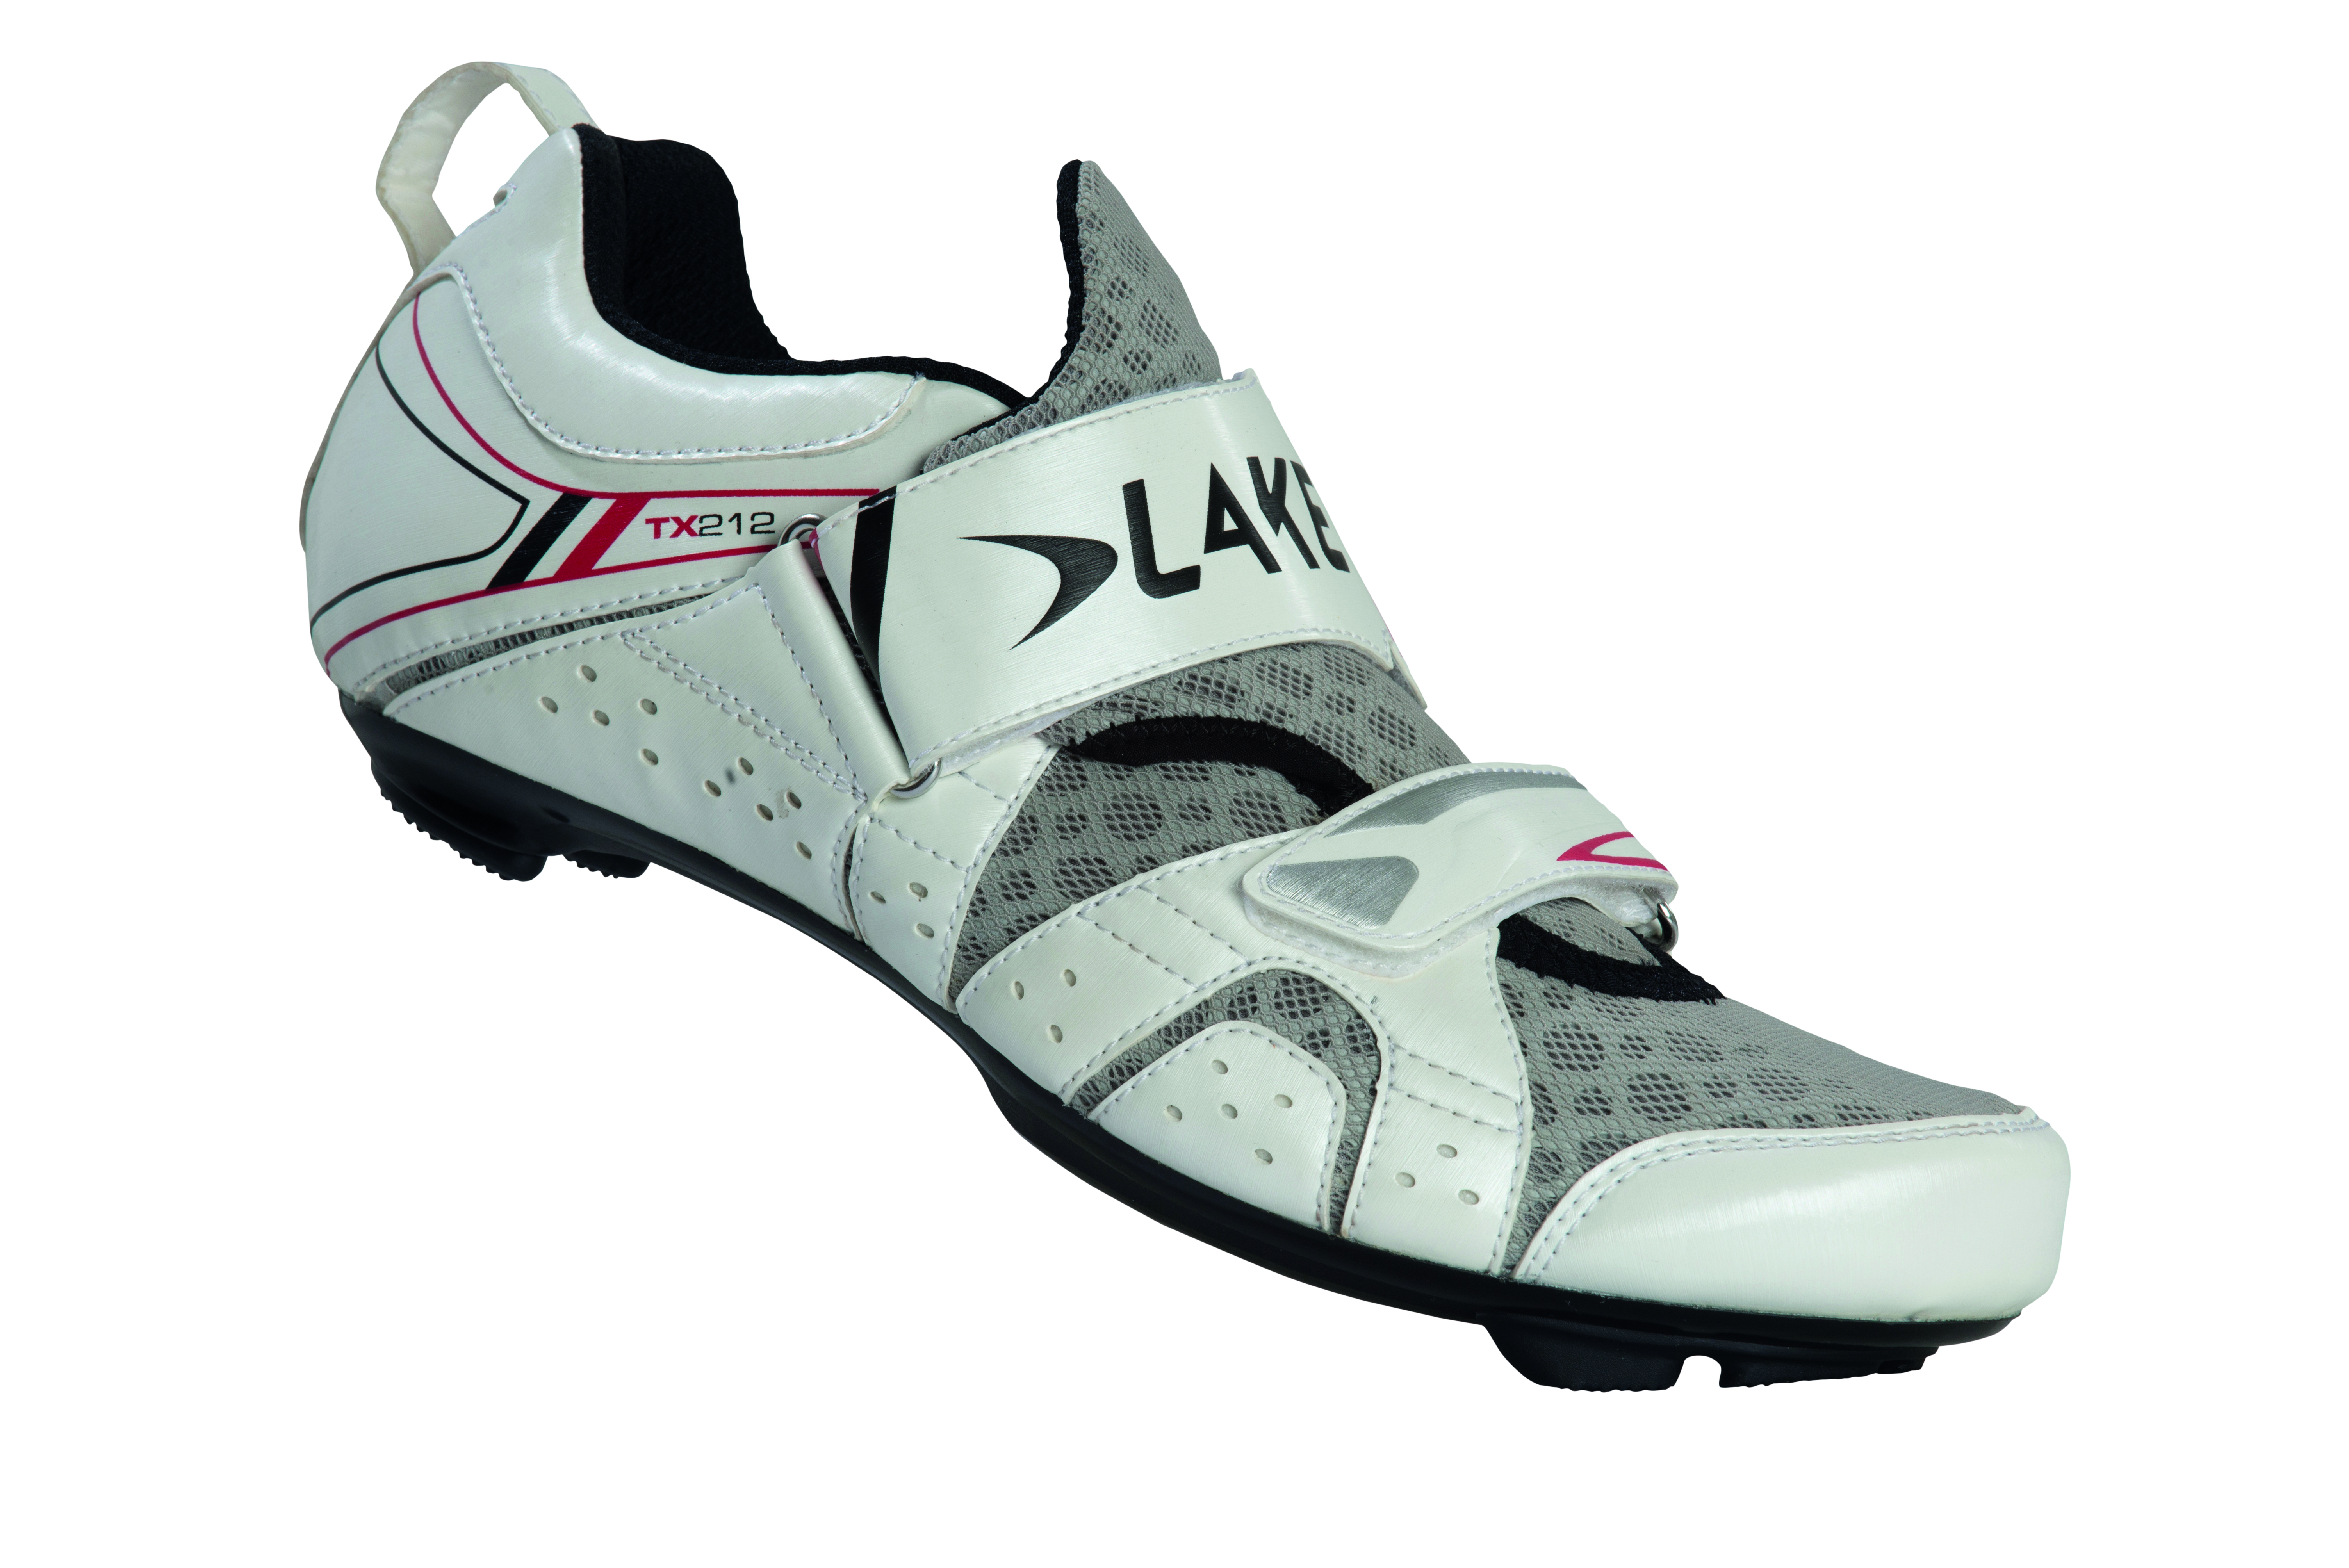 La chaussure de Triathlon TX212 par Lake